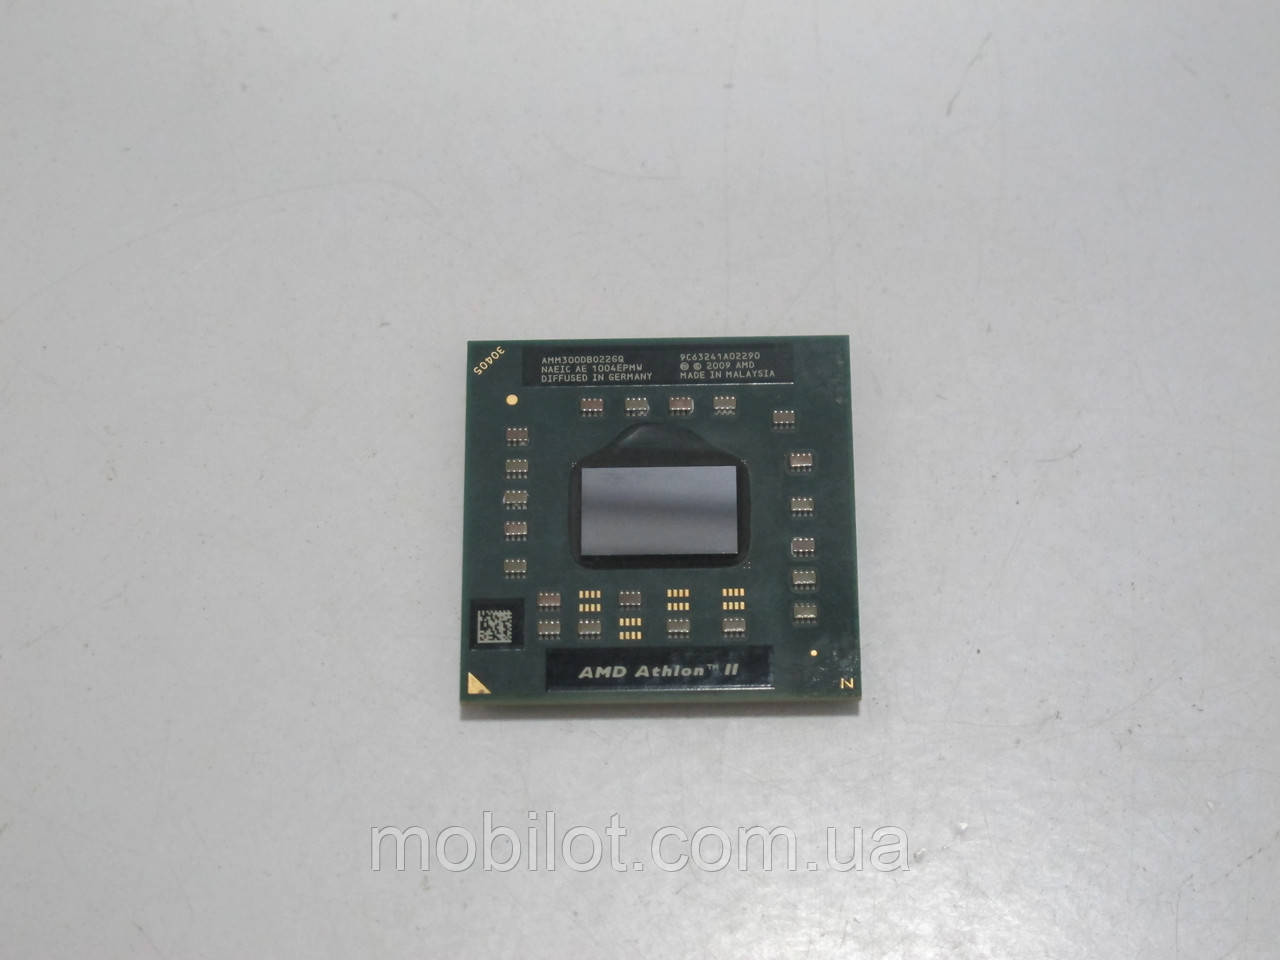 Процессор AMD Athlon II M300 (NZ-7332) - купить по лучшей цене в Киеве от  компании "Mobilot" - 781813682